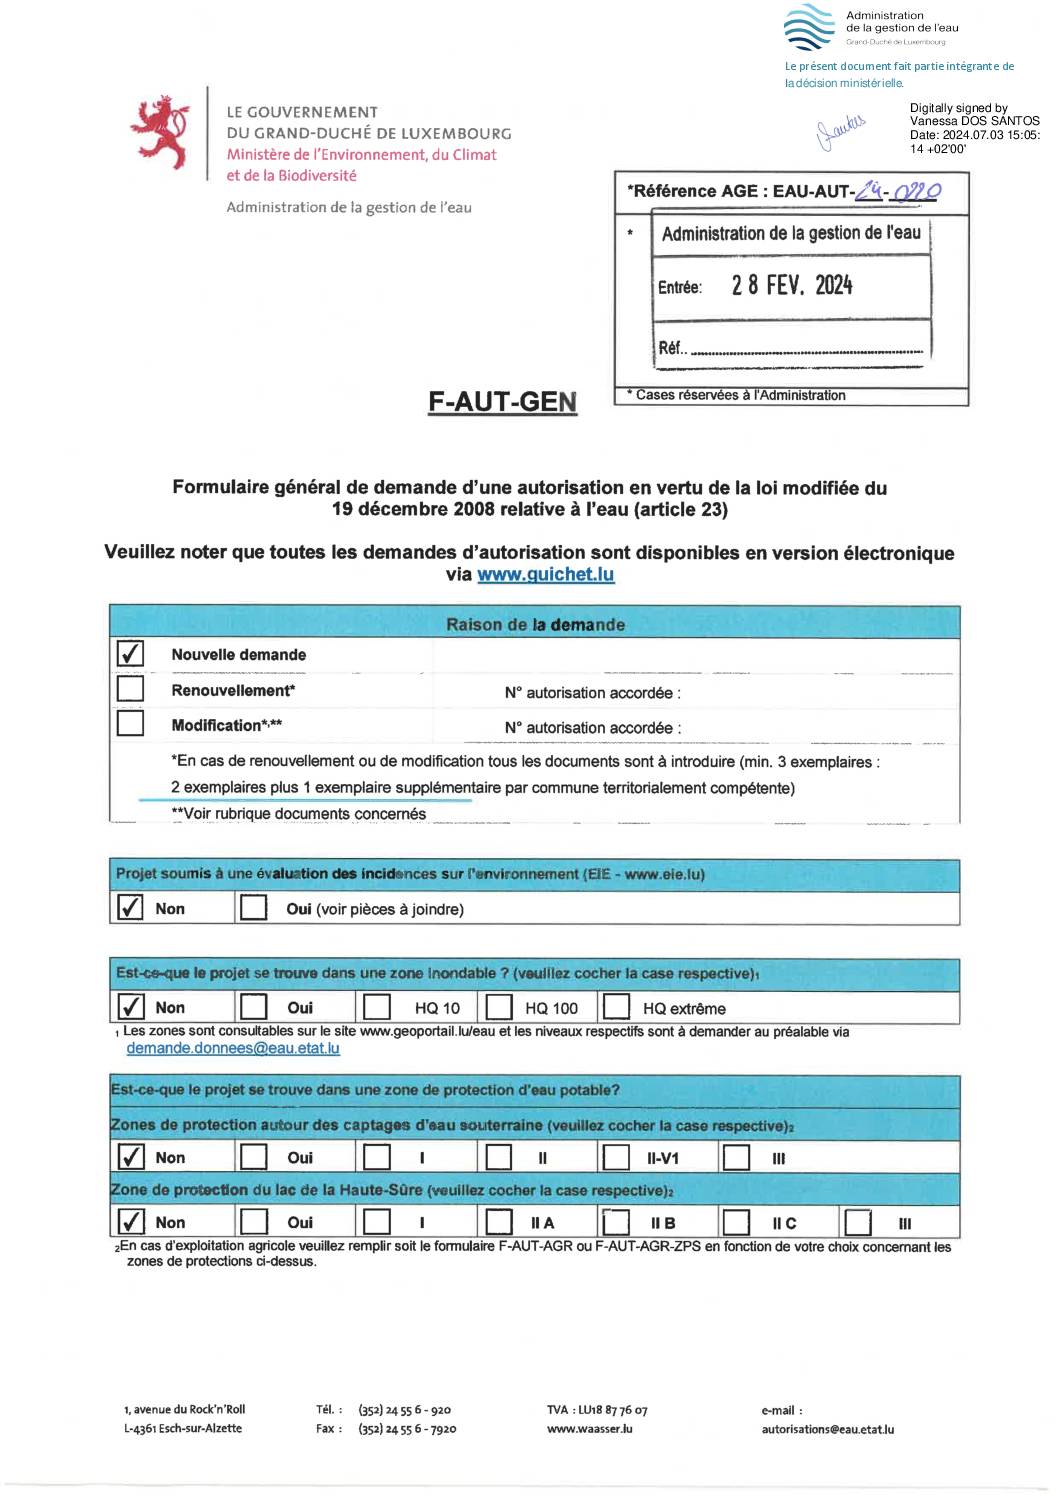 LET_EAU-AUT-24-0220-documents signés_VDO_240703_1.0